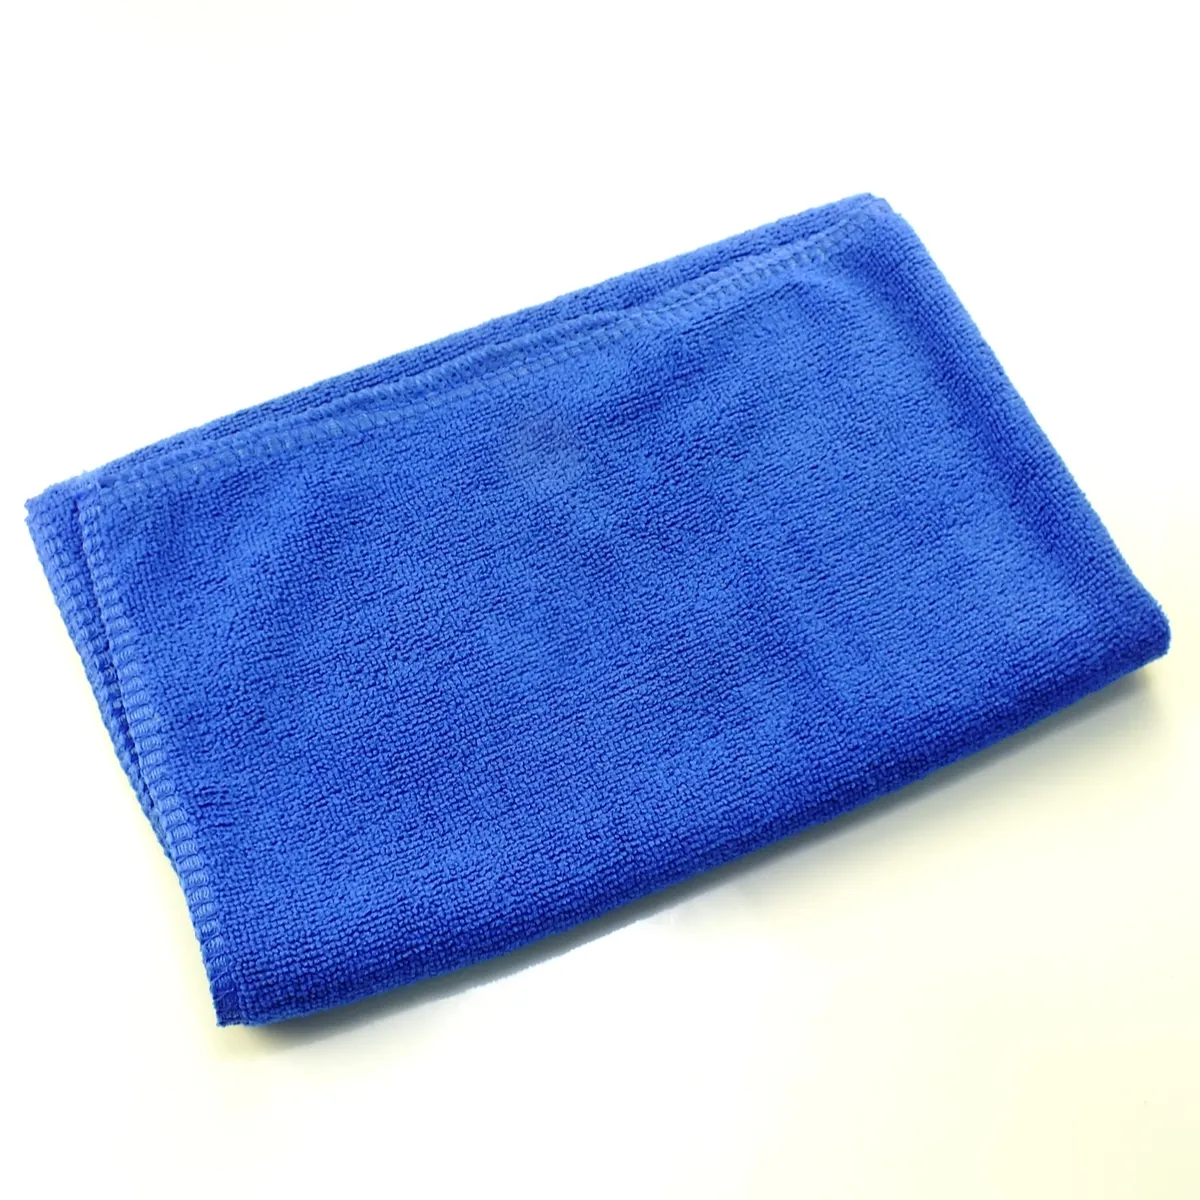 बिक्री के लिए सर्वश्रेष्ठ ग्रेड नरम गुणवत्ता वाले माइक्रोफाइबर तौलिए 30*30 माइक्रोफाइबर टॉवेल 30 माइक्रोफाइबर साफ कपड़े की पेशकश की गई है।